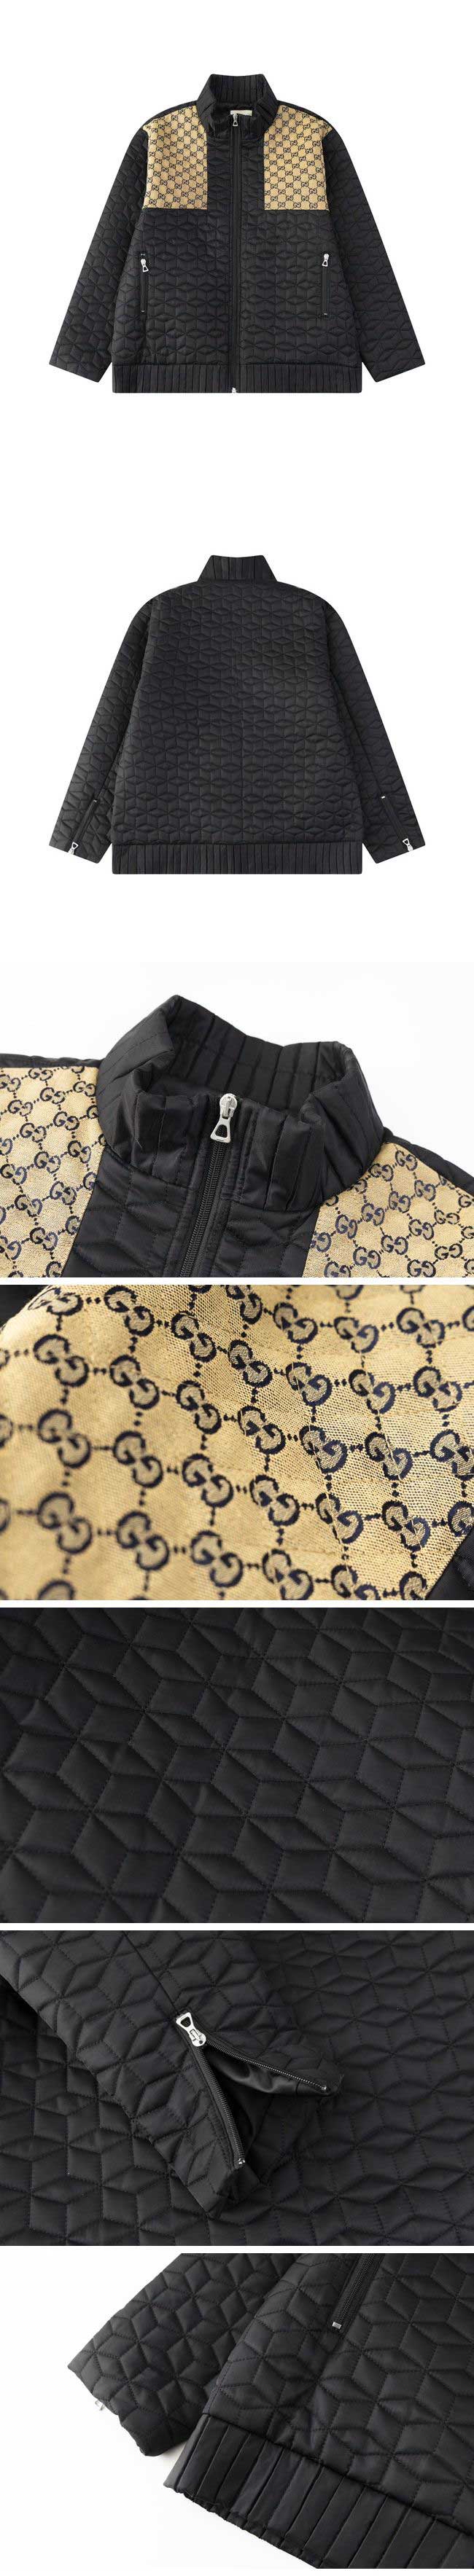 Gucci Fabric Quilting Jacket グッチ ファブリック キルティング ジャケット